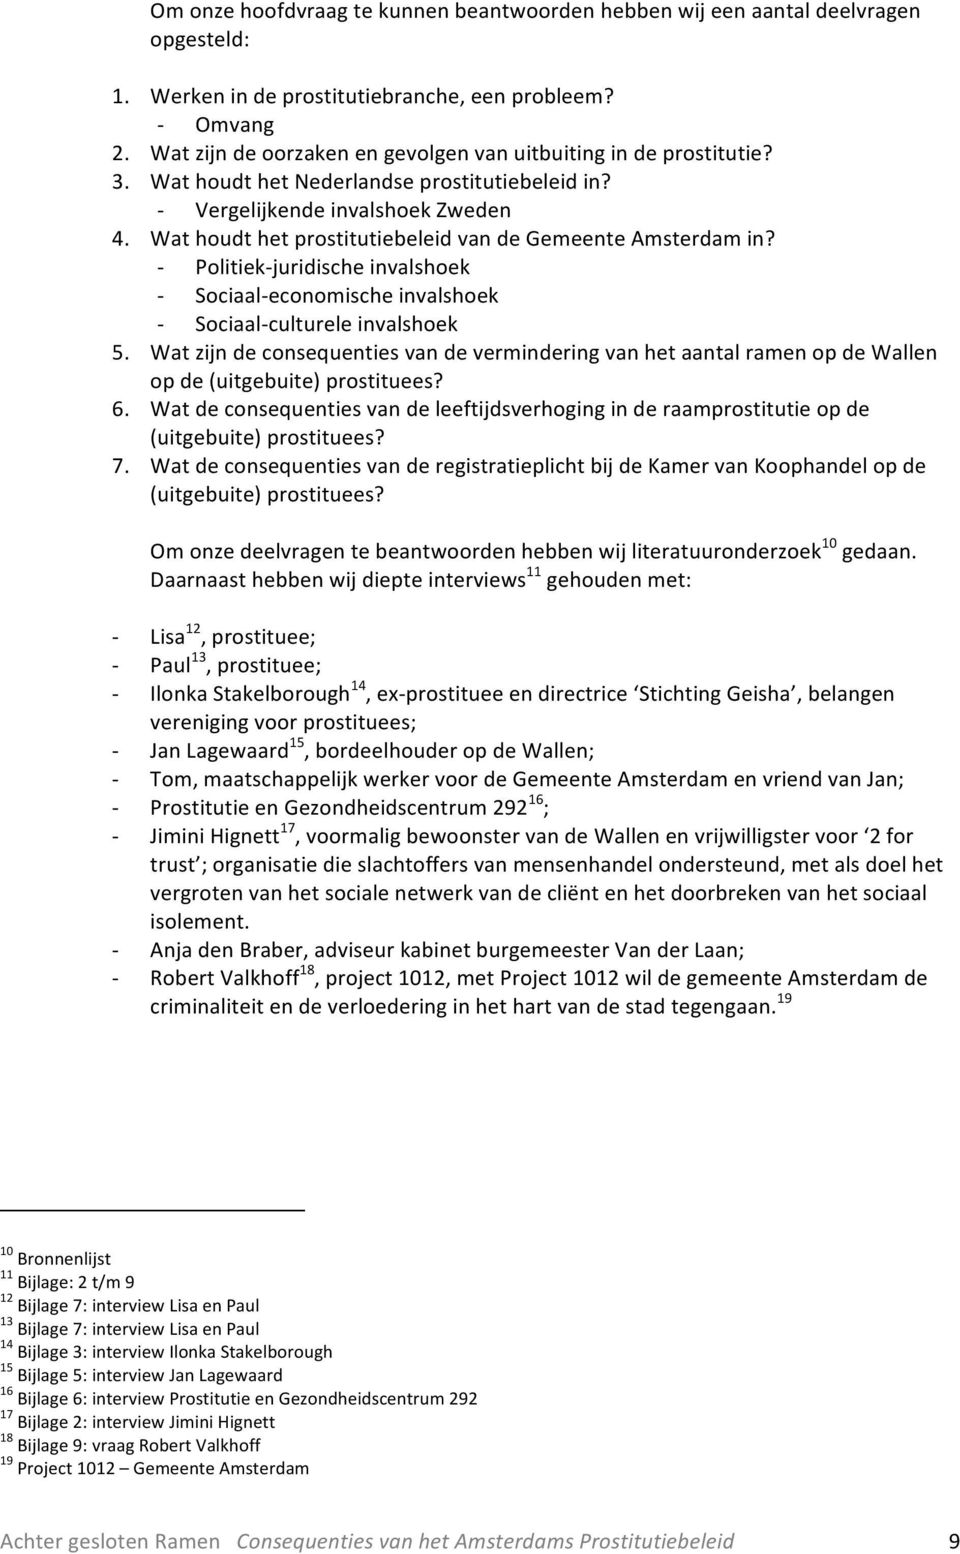 Wat houdt het prostitutiebeleid van de Gemeente Amsterdam in? Politiekjuridische invalshoek Sociaaleconomische invalshoek Sociaalculturele invalshoek 5.